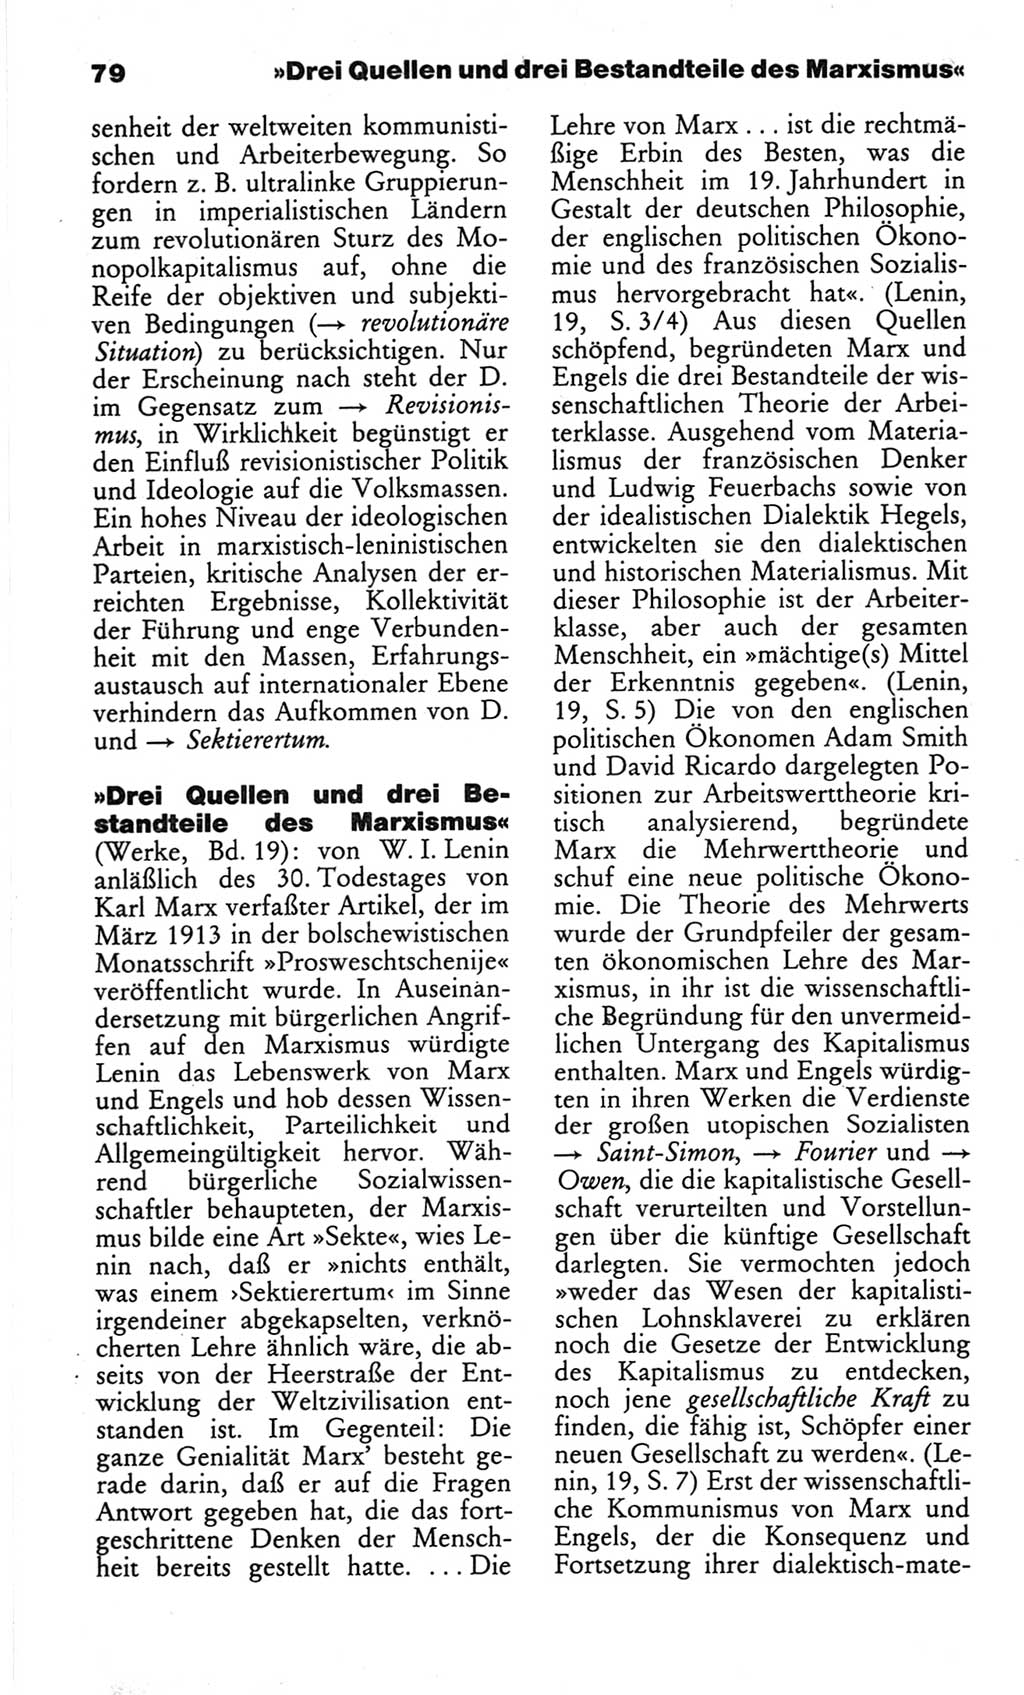 Wörterbuch des wissenschaftlichen Kommunismus [Deutsche Demokratische Republik (DDR)] 1982, Seite 79 (Wb. wiss. Komm. DDR 1982, S. 79)